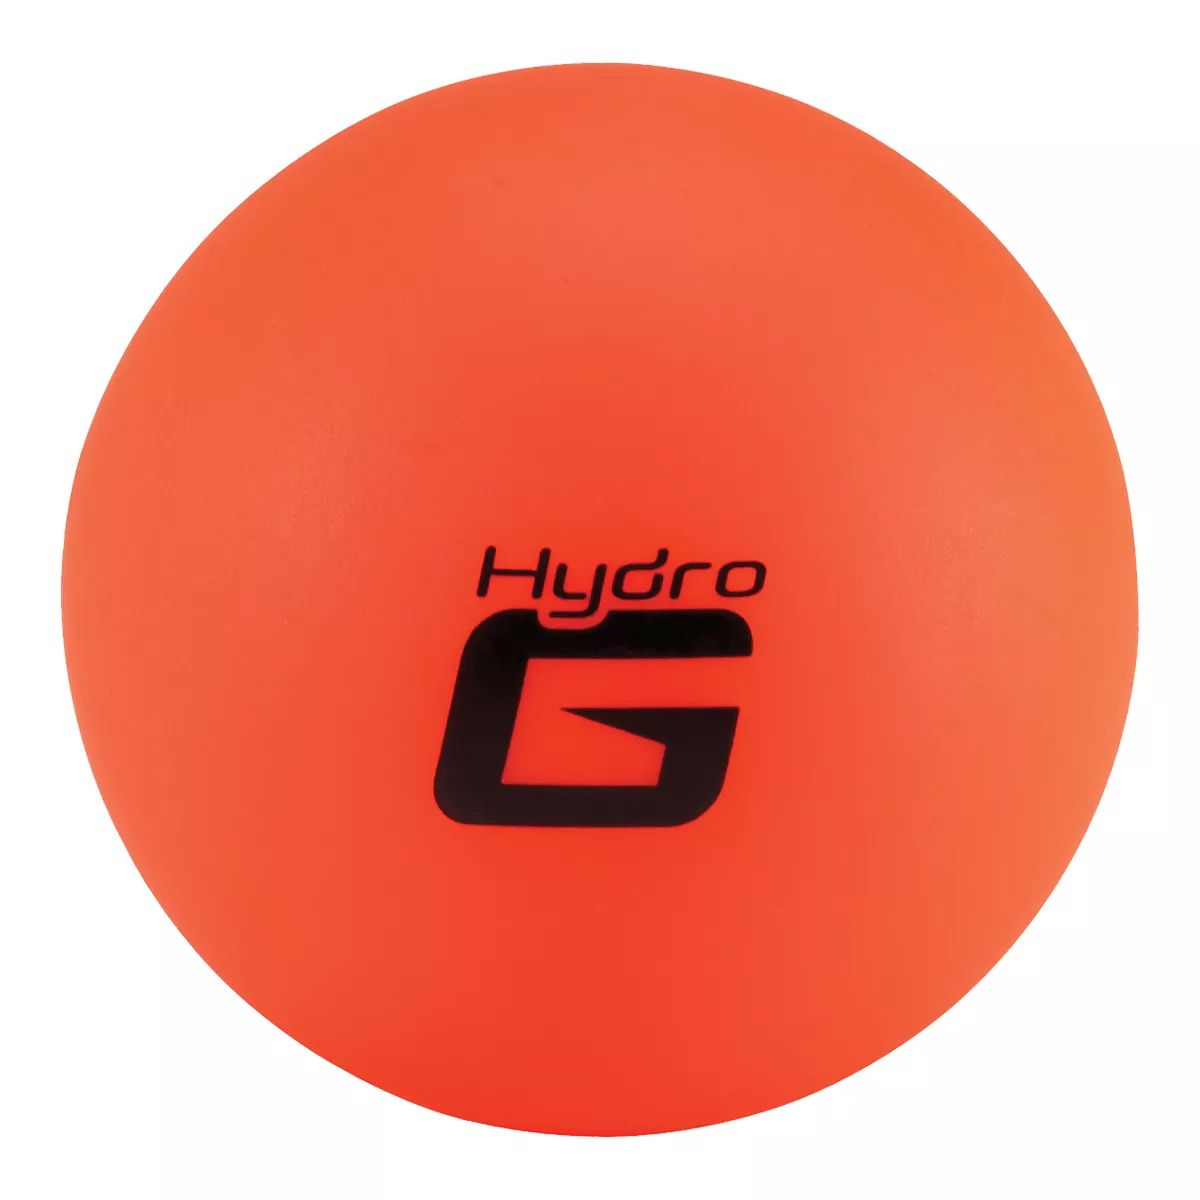 Bauer Hydrog Warm Weather Orange Hockey Ball - Case of 4